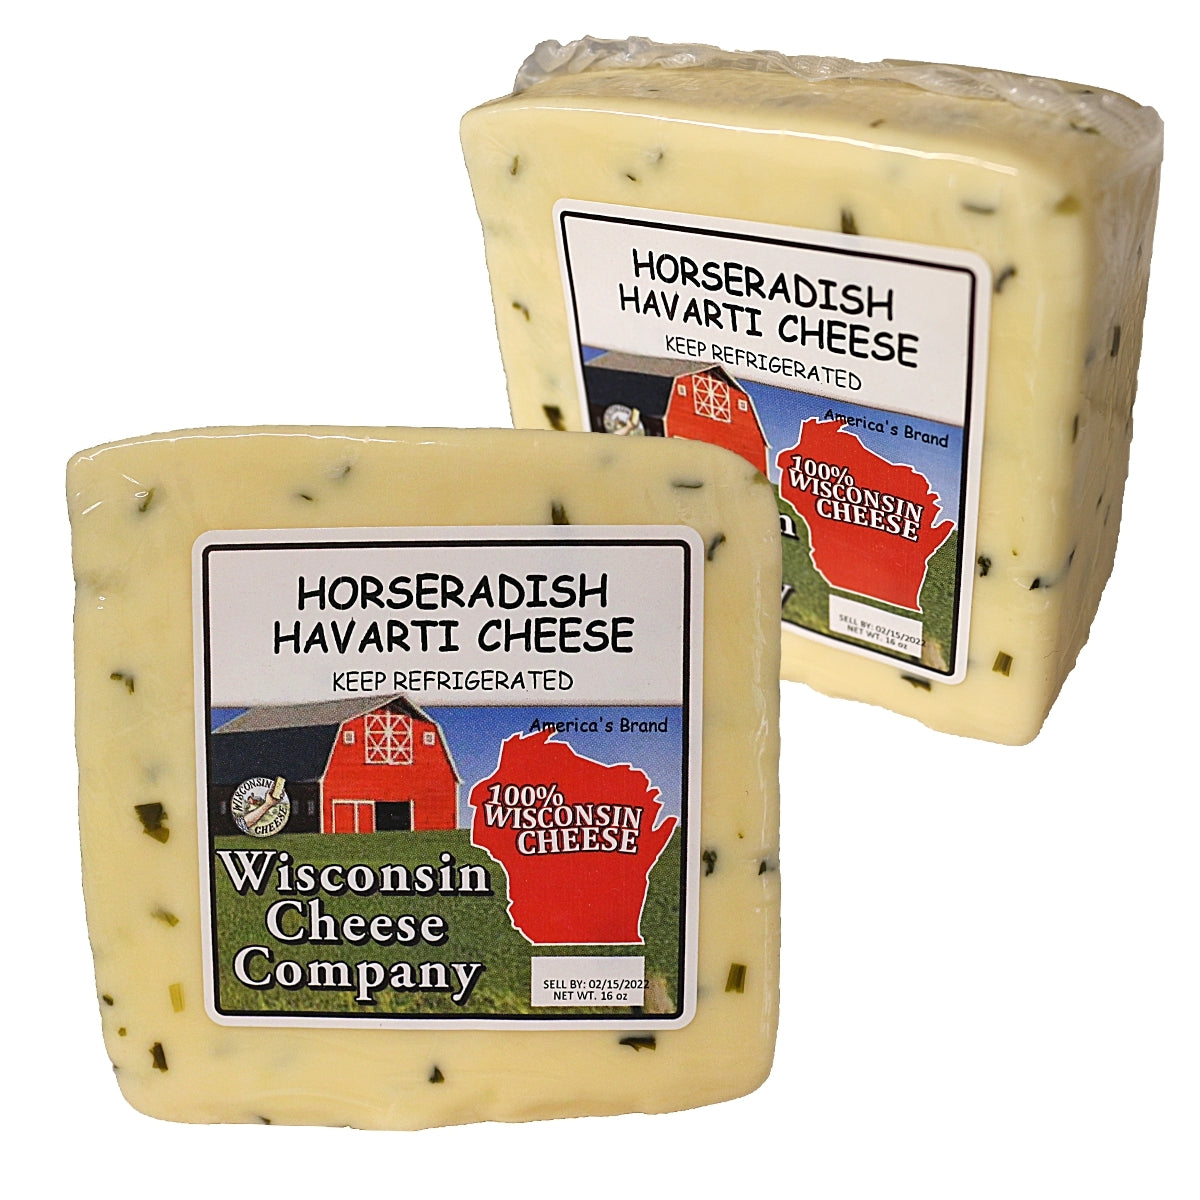 Two blocks of Horseradish Havarti Cheese